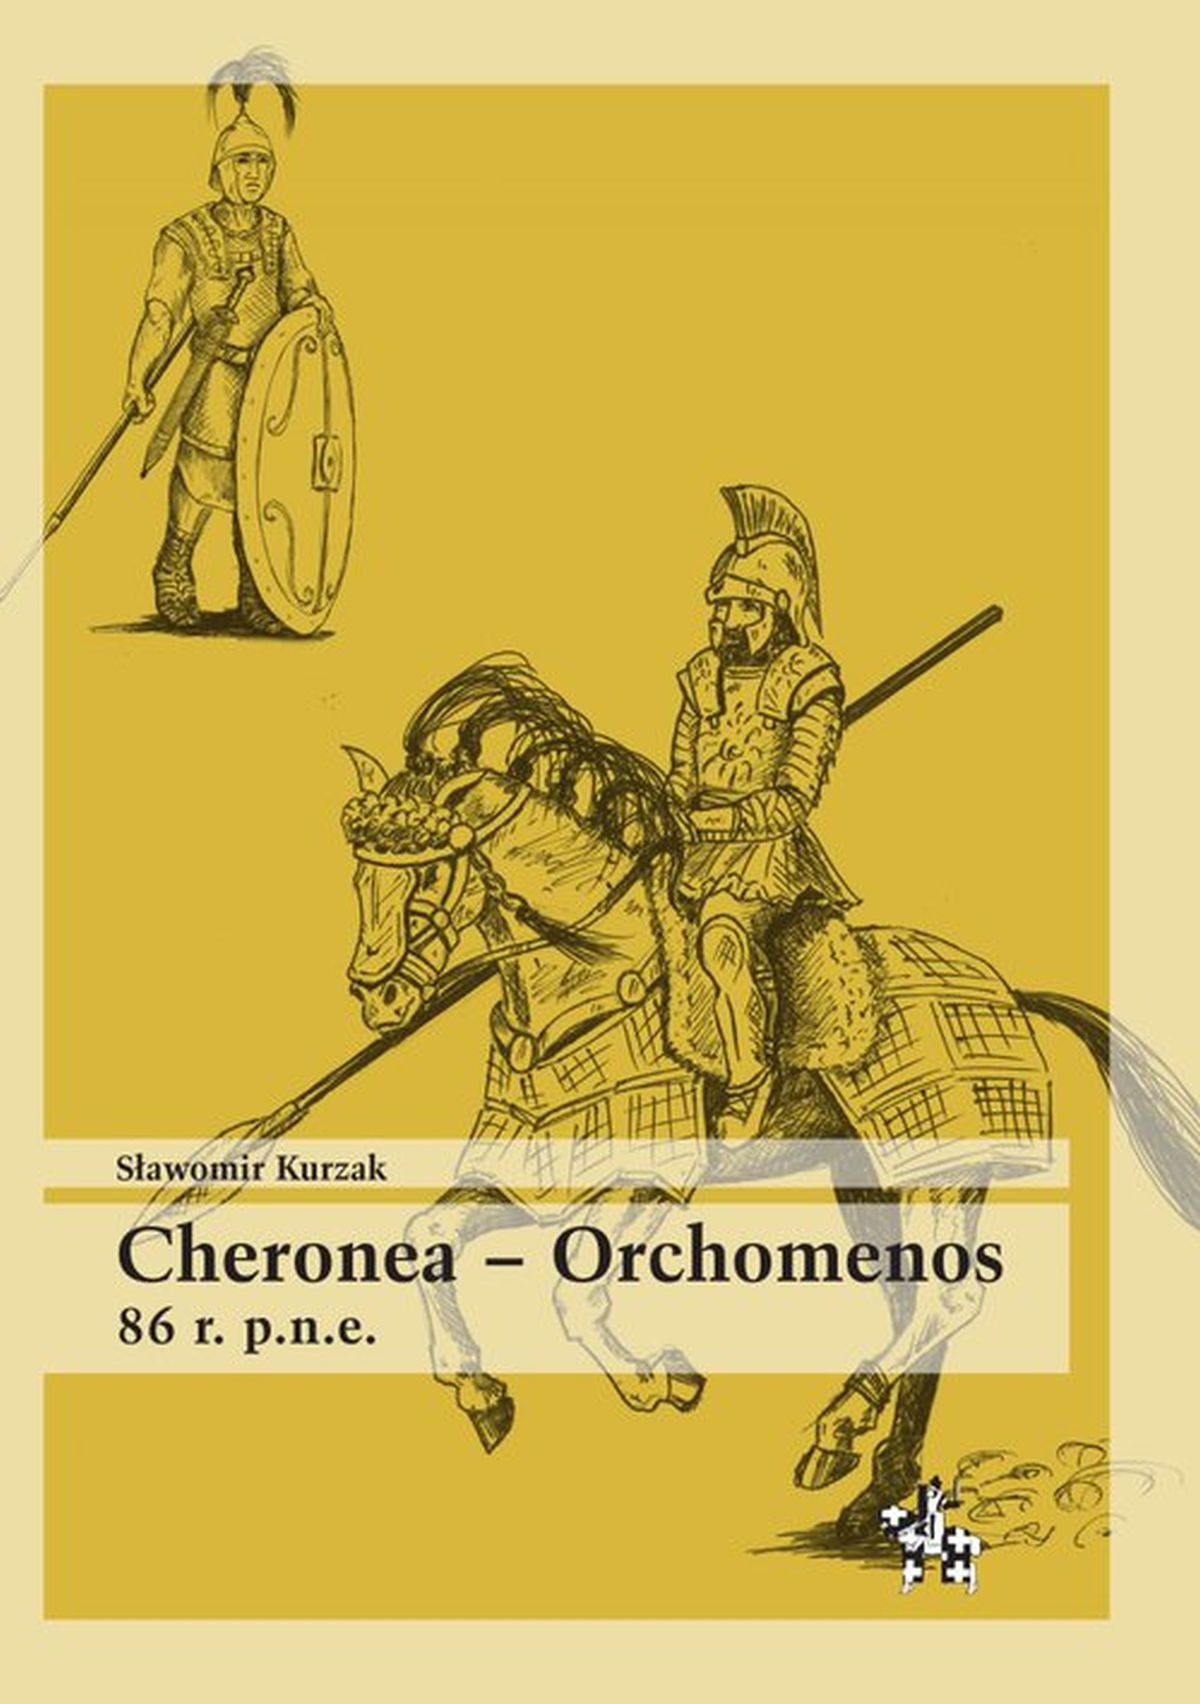 Cheronea Orchomenos 86 r. p.n.e.